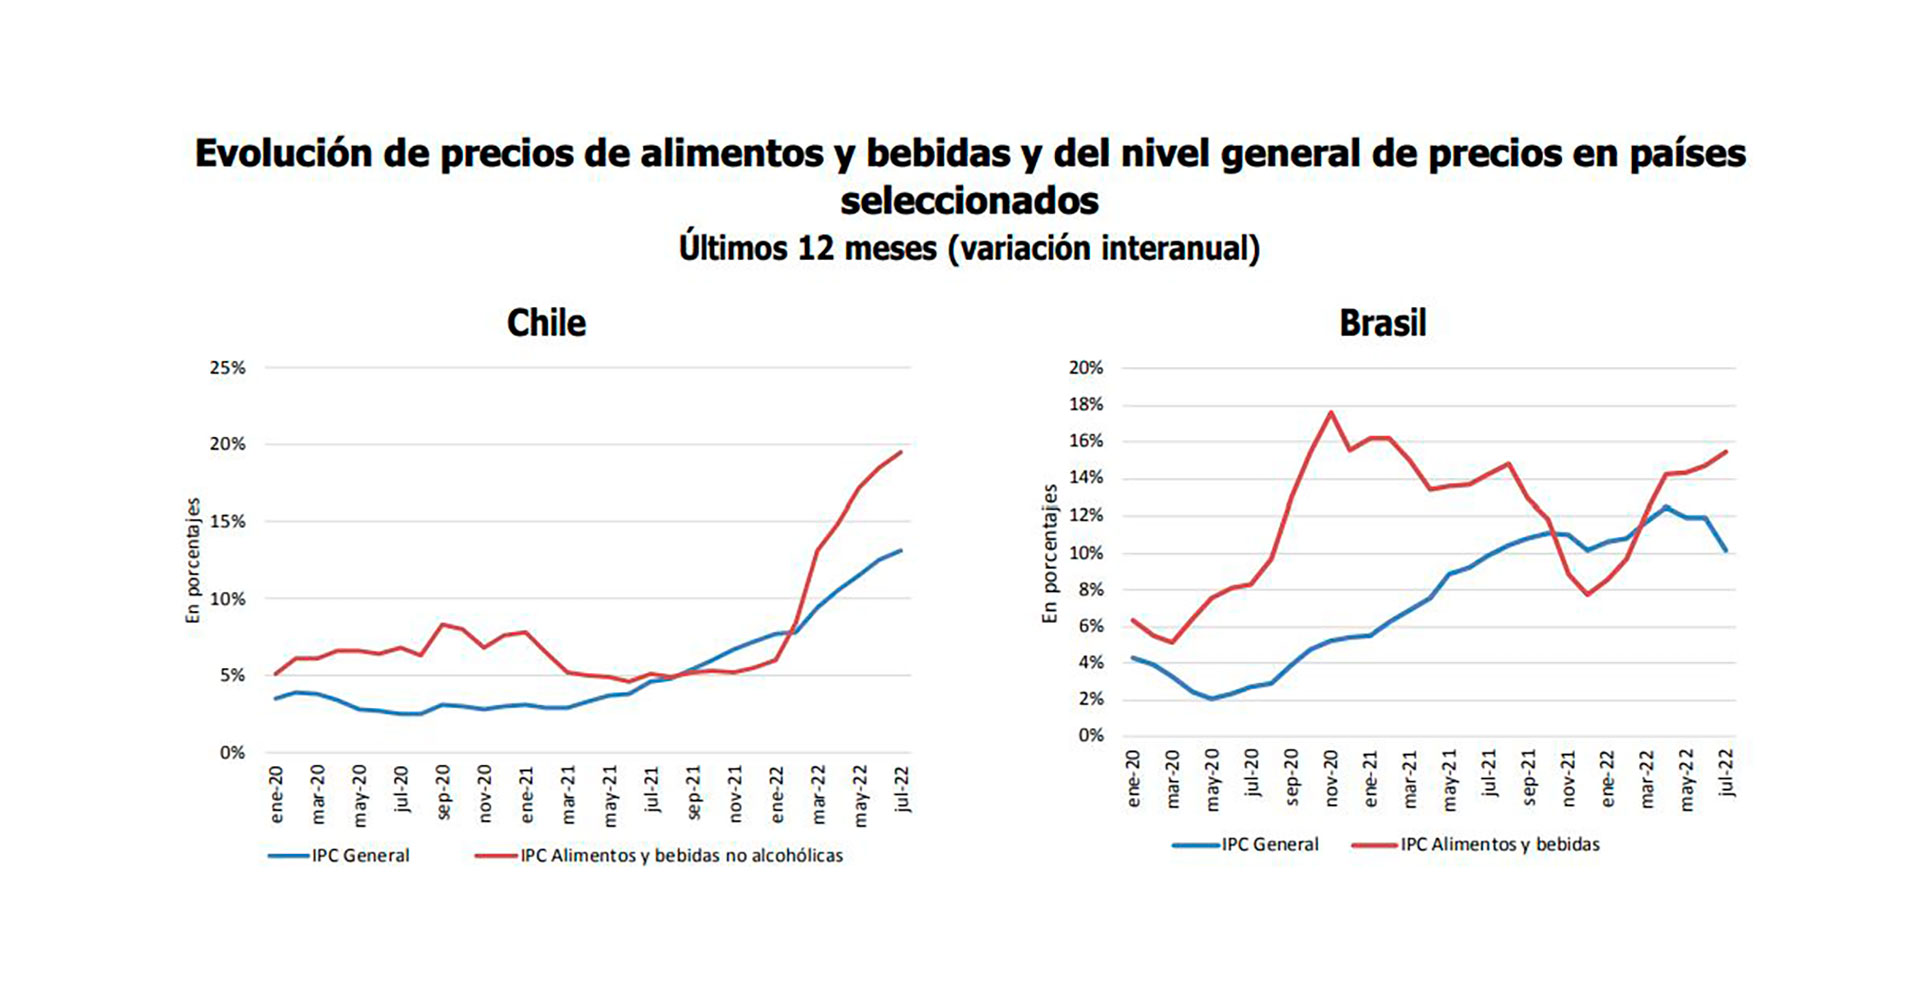 Los gráficos muestran cómo la inflación de alimentos supera en Chile y Brasil a la inflación general. En Brasil, ésta ultima empezó a descender antes de que lo haga el precios de los alimentos